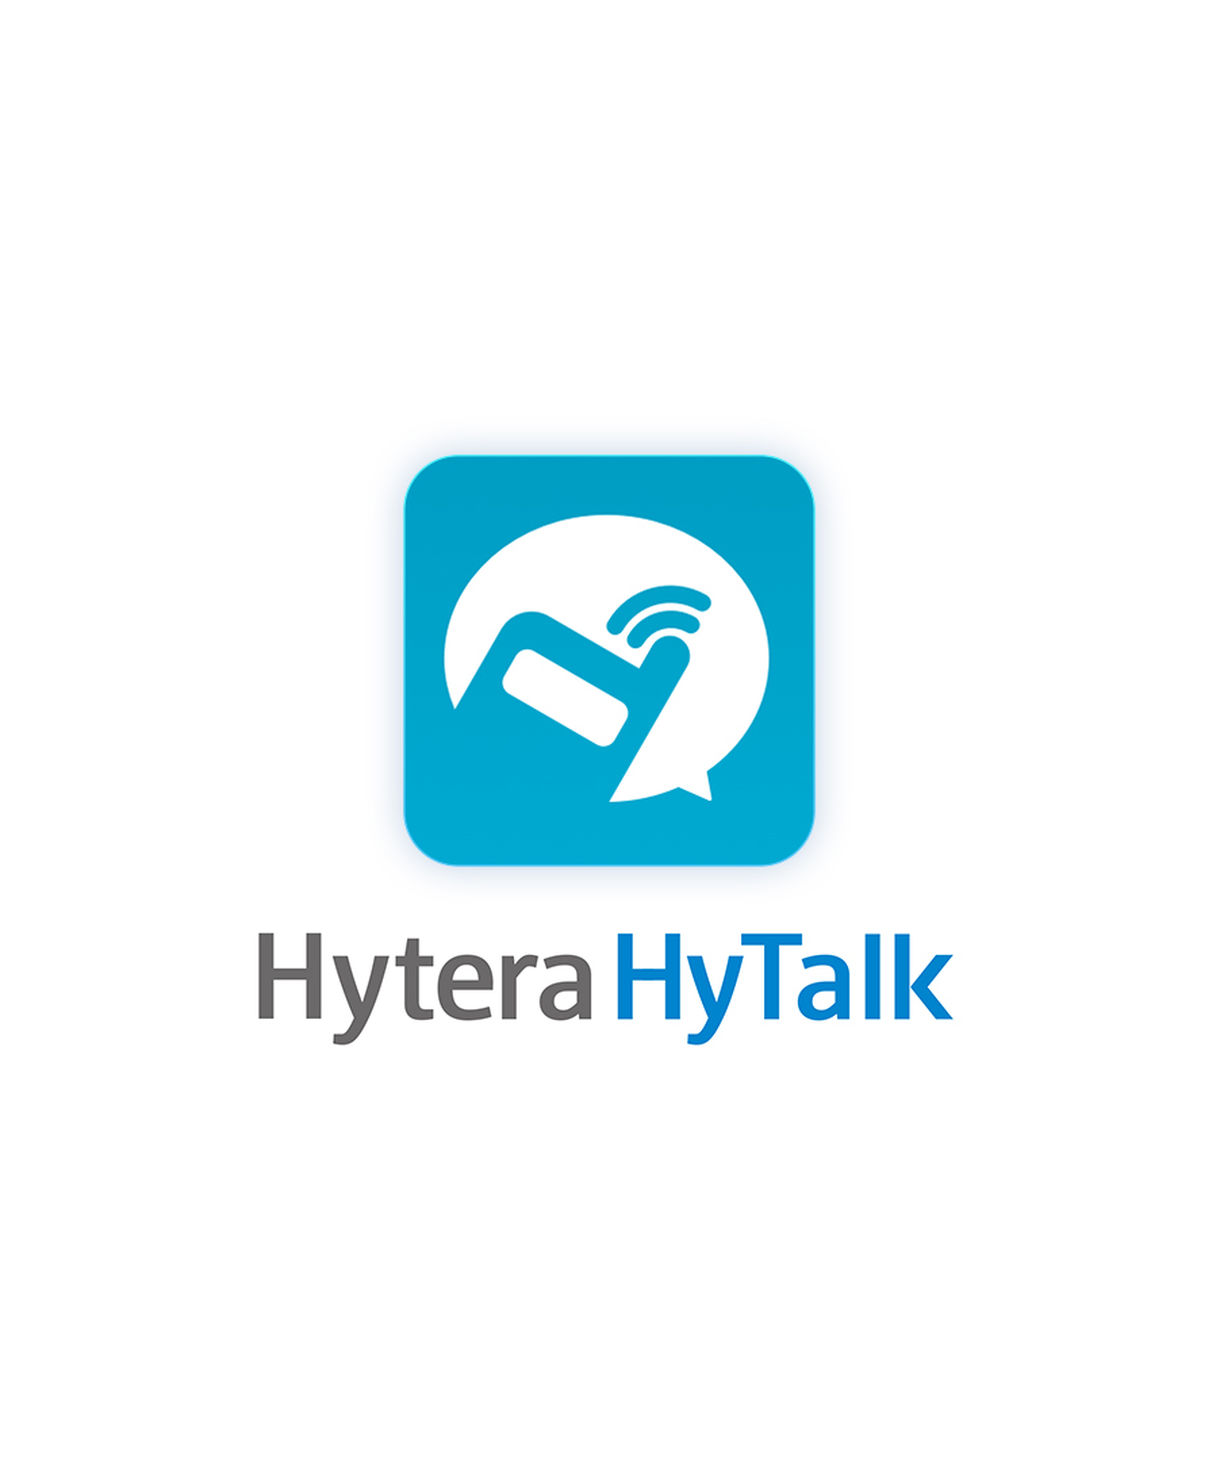 Hytalk logo